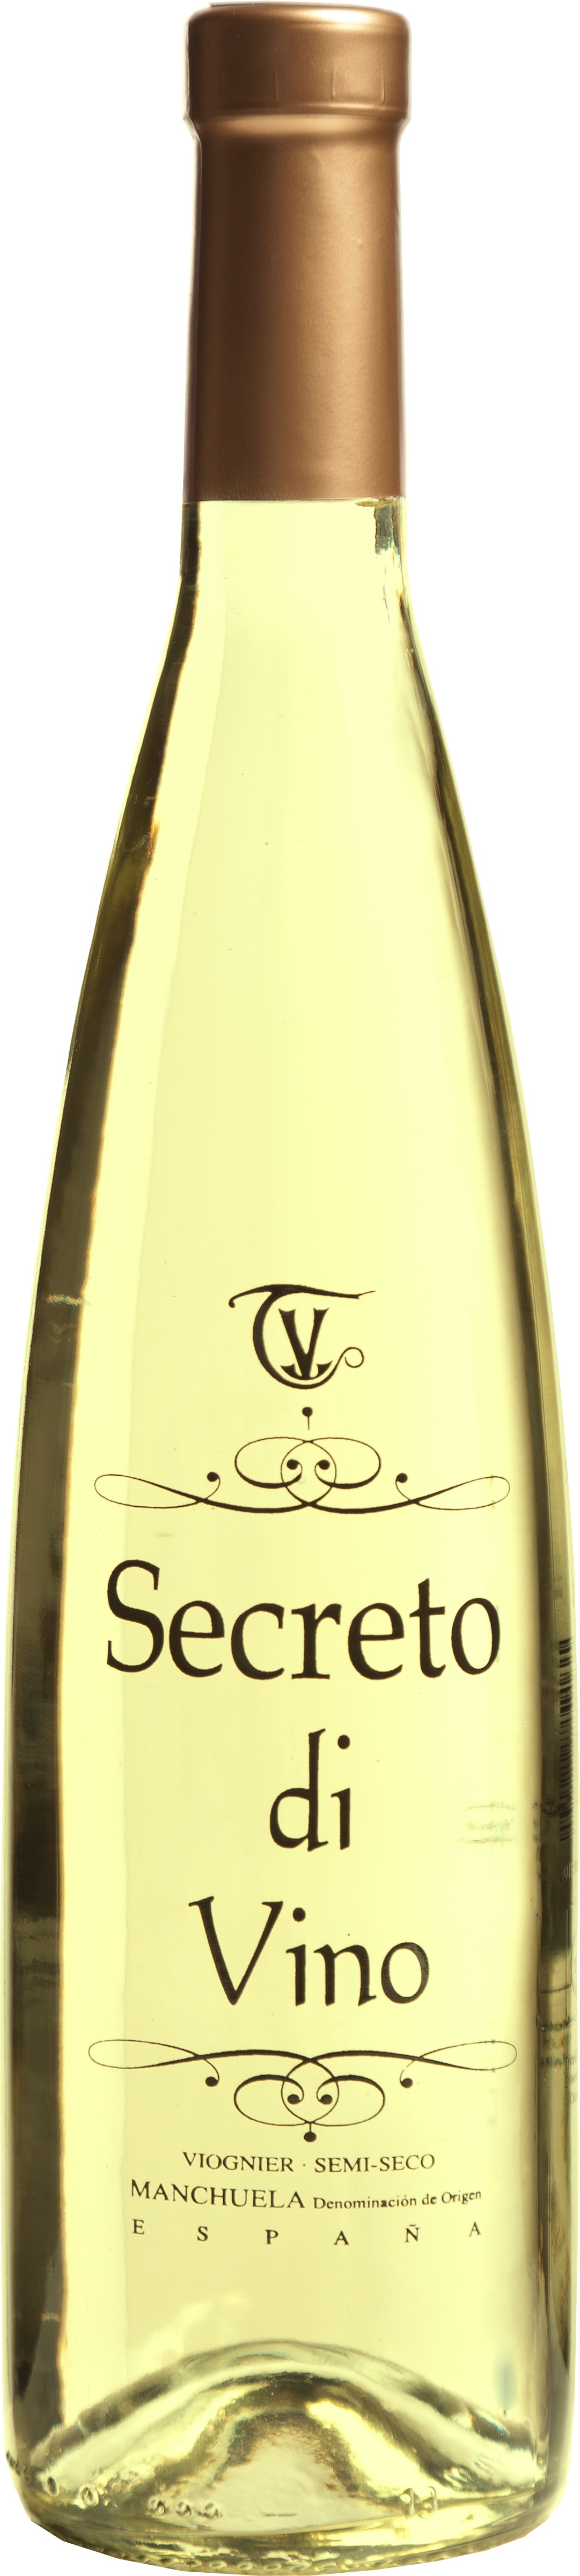 Logo Wein Secreto Di Vino Blanco Viognier